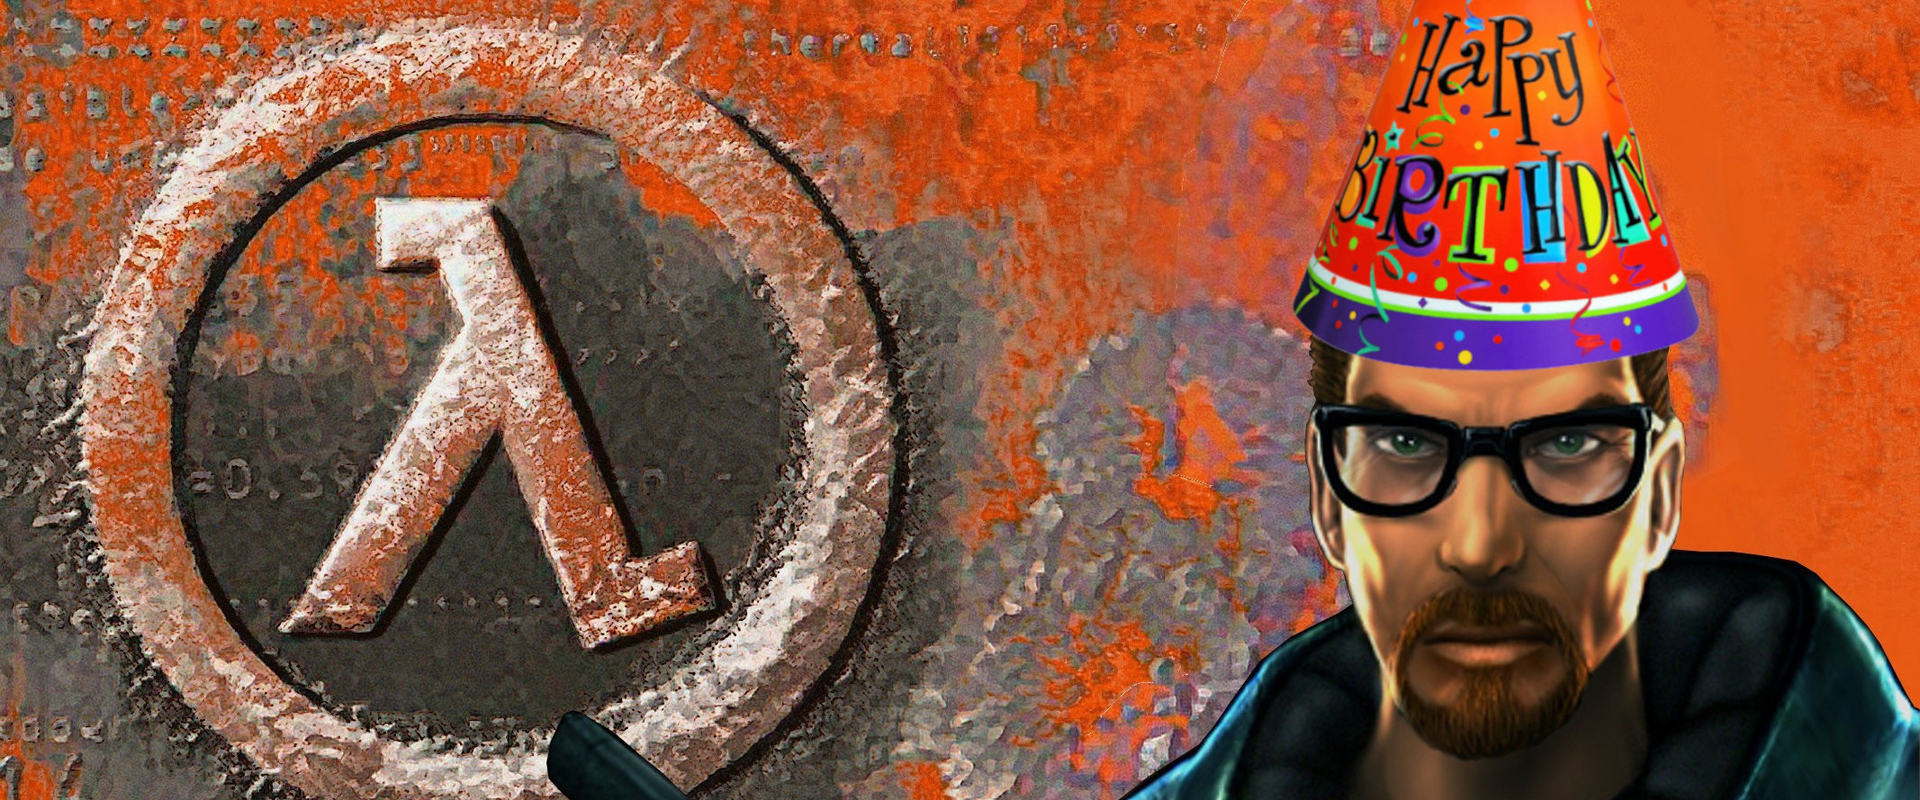 Ma 20 éve, hogy elindult világhódító útjára a Half-Life